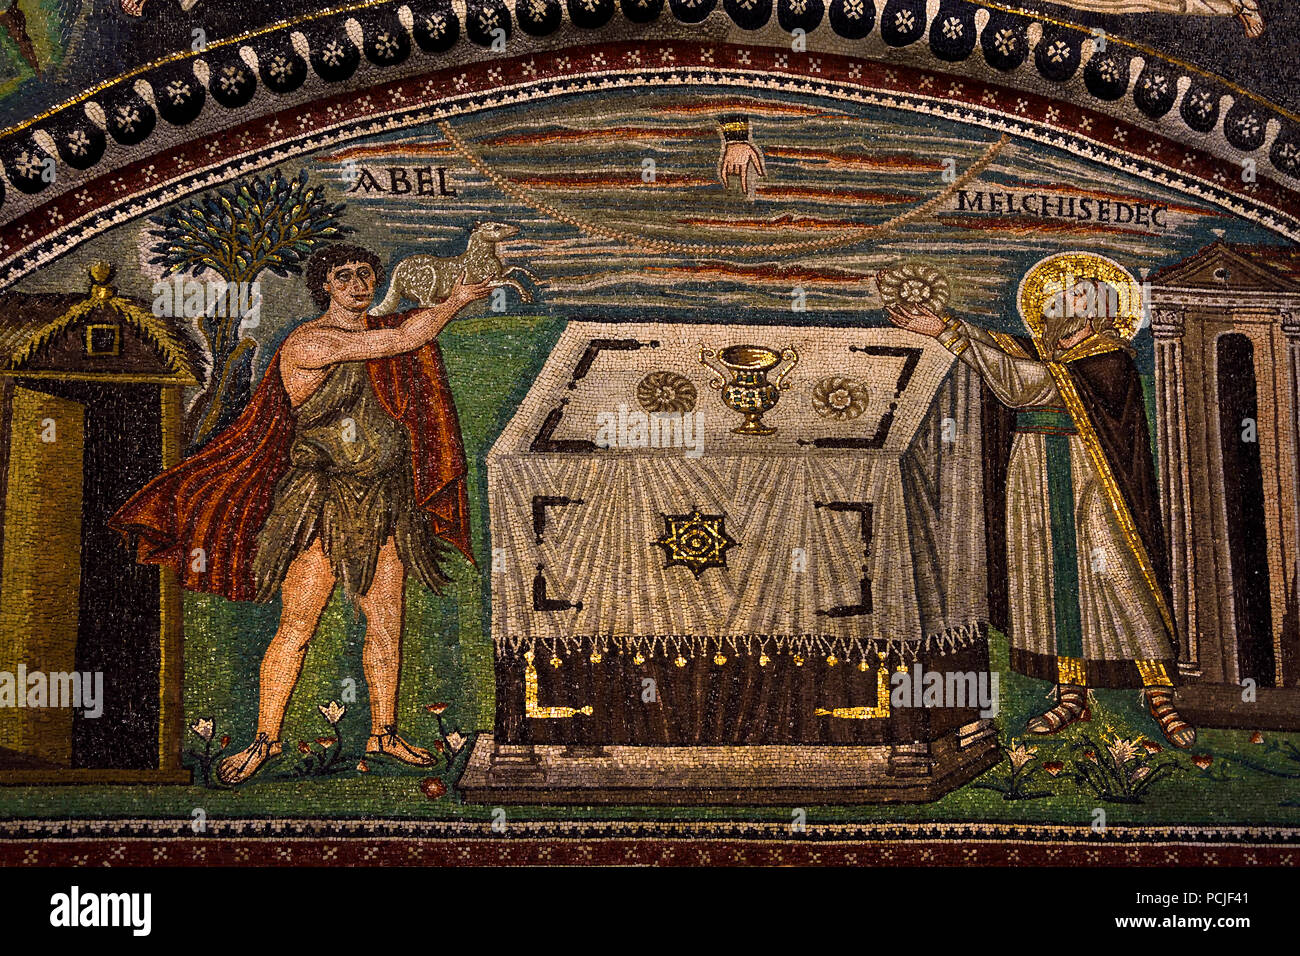 Opfer von Abel und Marjan Kwint in der Basilika von San Vitale 547 AD 6. Jahrhundert in Ravenna - Mosaiken (späte römische und byzantinische Architektur,) Emilia-Romagna - Nördliche Italien. (UNESCO Weltkulturerbe) Stockfoto